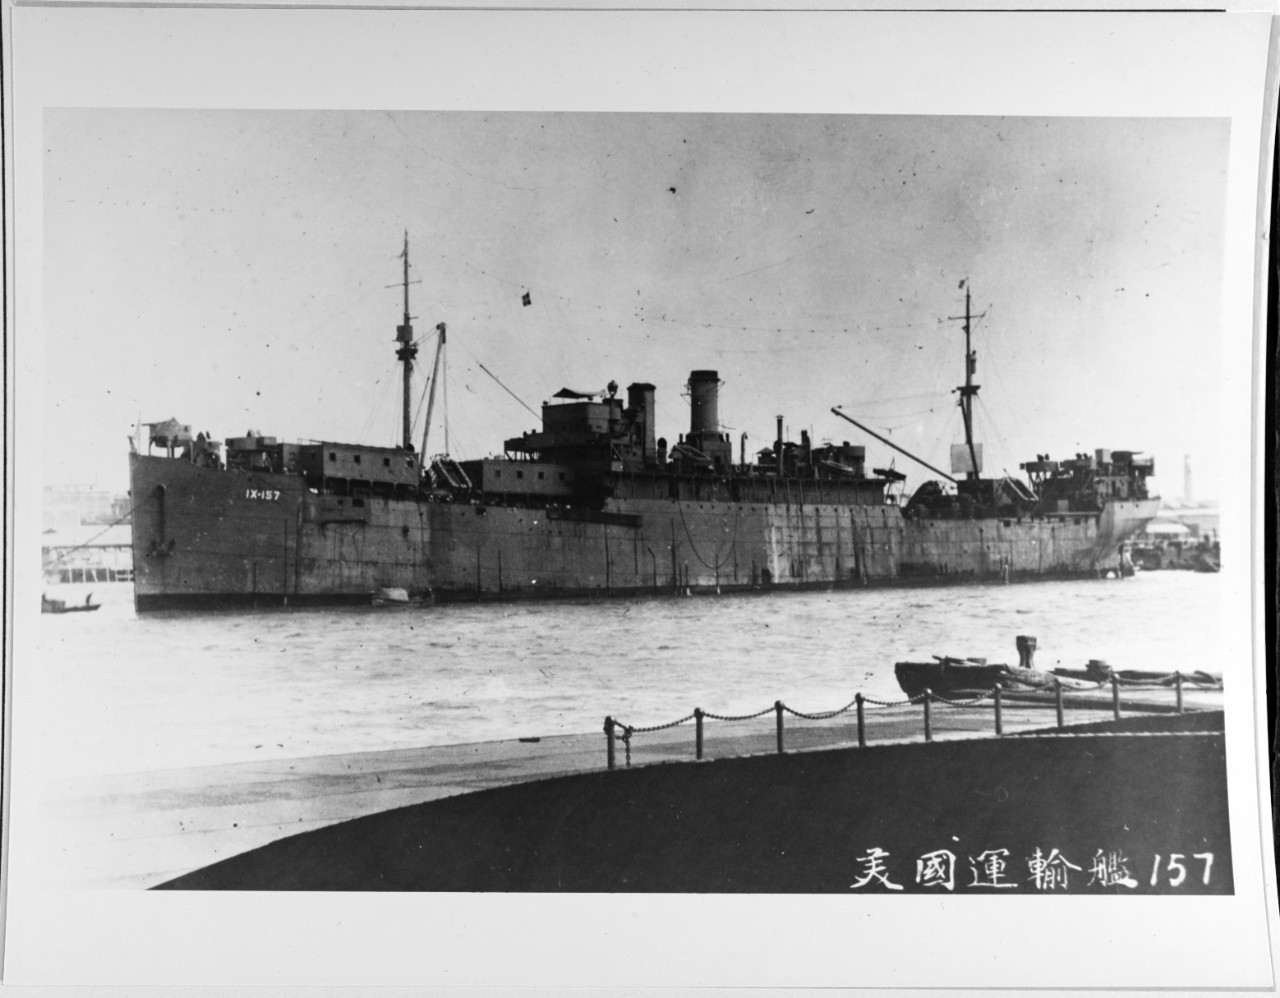 USS ORVETTA (IX-157)